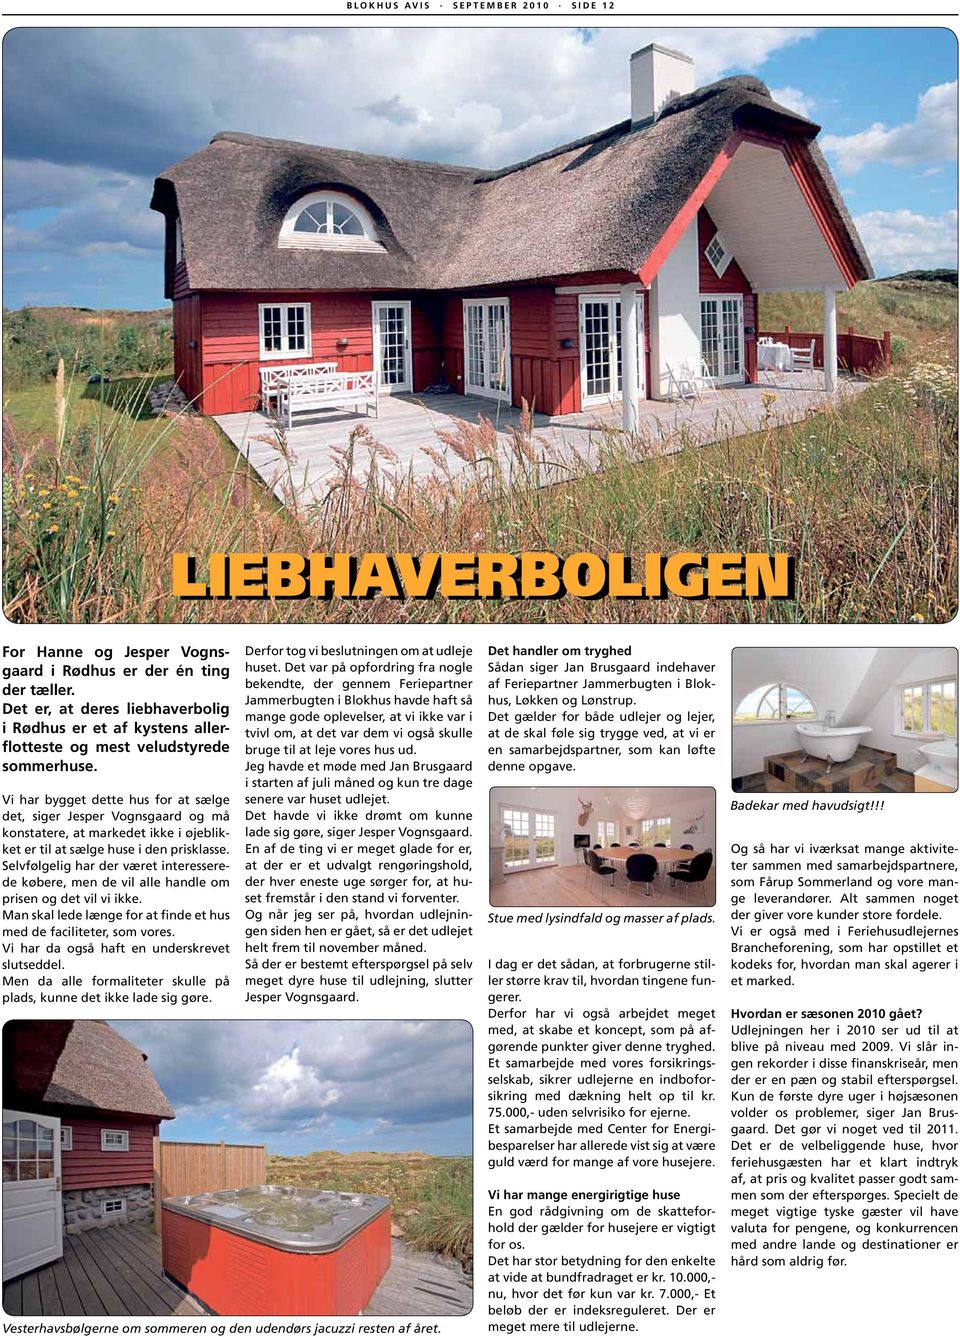 Vi har bygget dette hus for at sælge det, siger Jesper Vognsgaard og må konstatere, at markedet ikke i øjeblikket er til at sælge huse i den prisklasse.